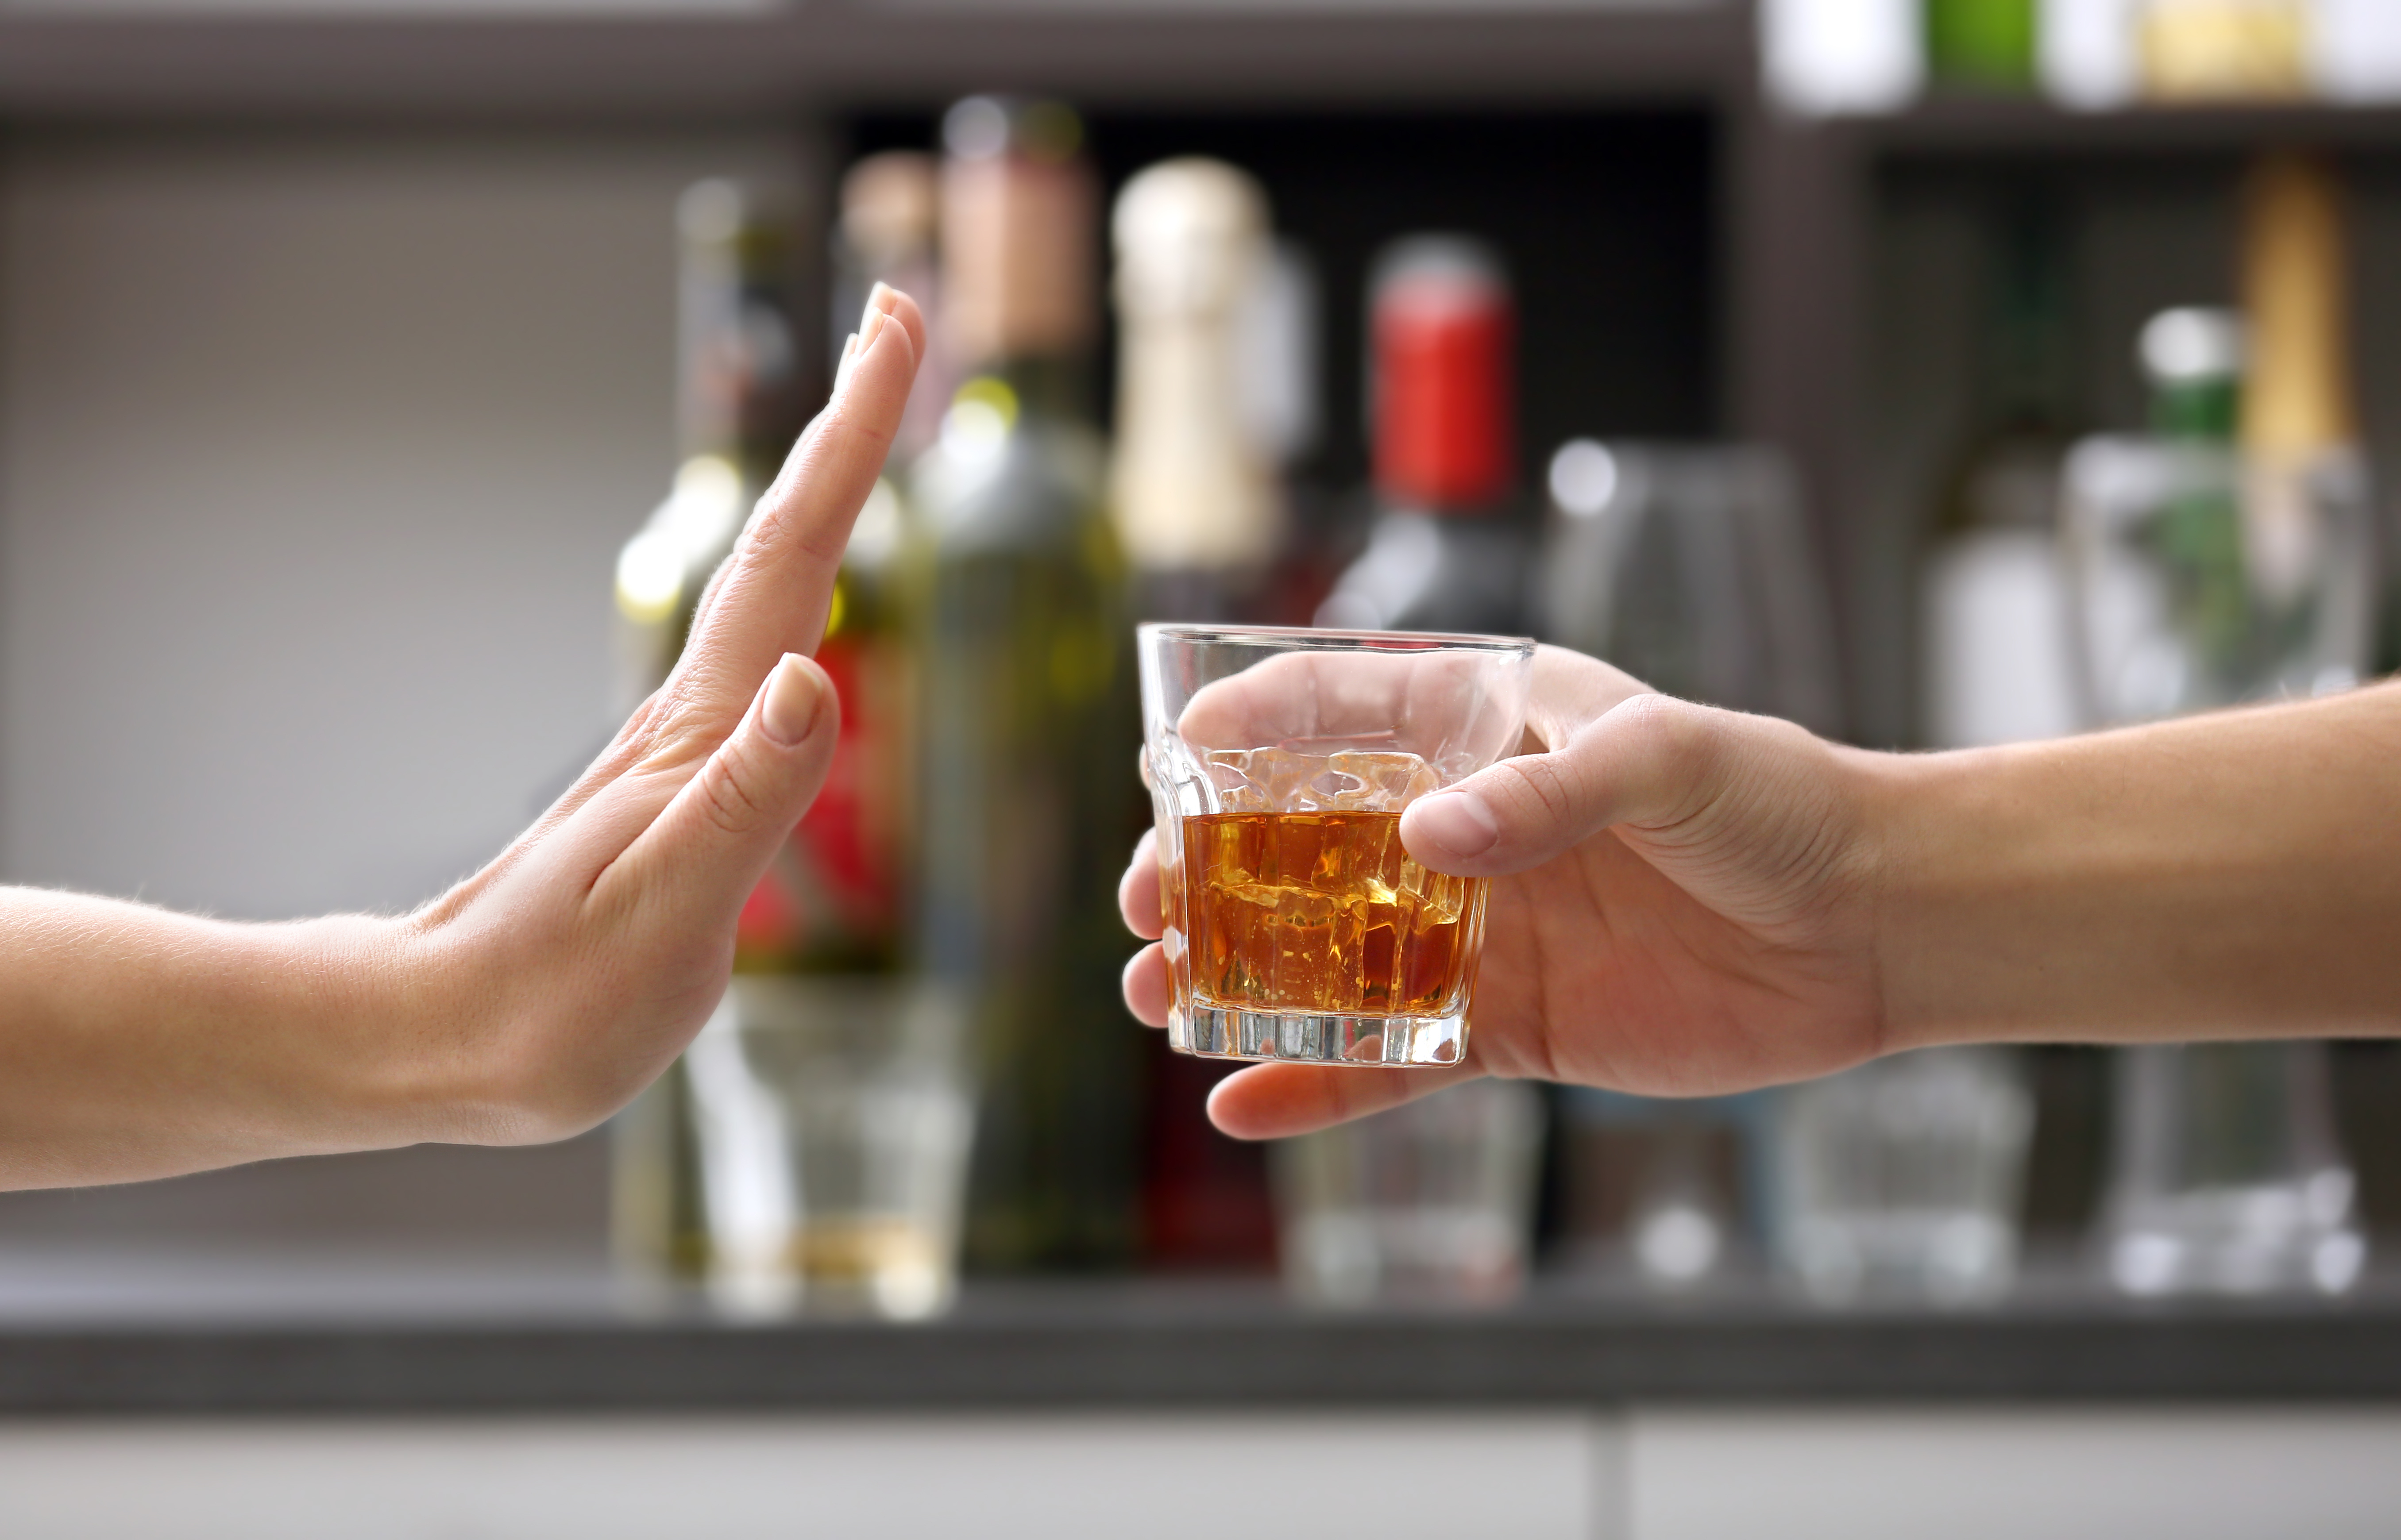 Alcohol: are we enjoying responsibly?